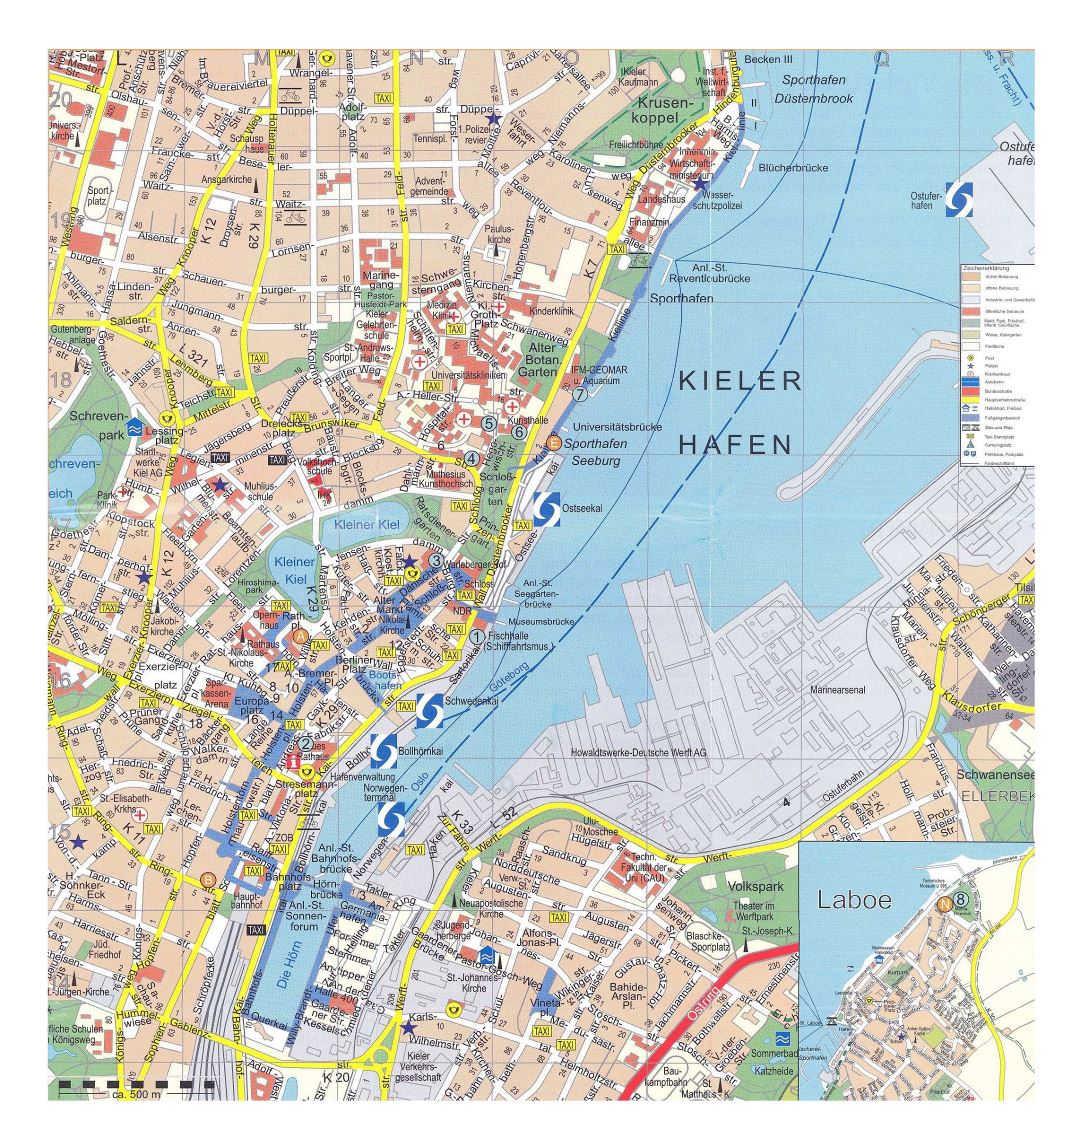 Большая детальная туристическая карта центральной части города Киль